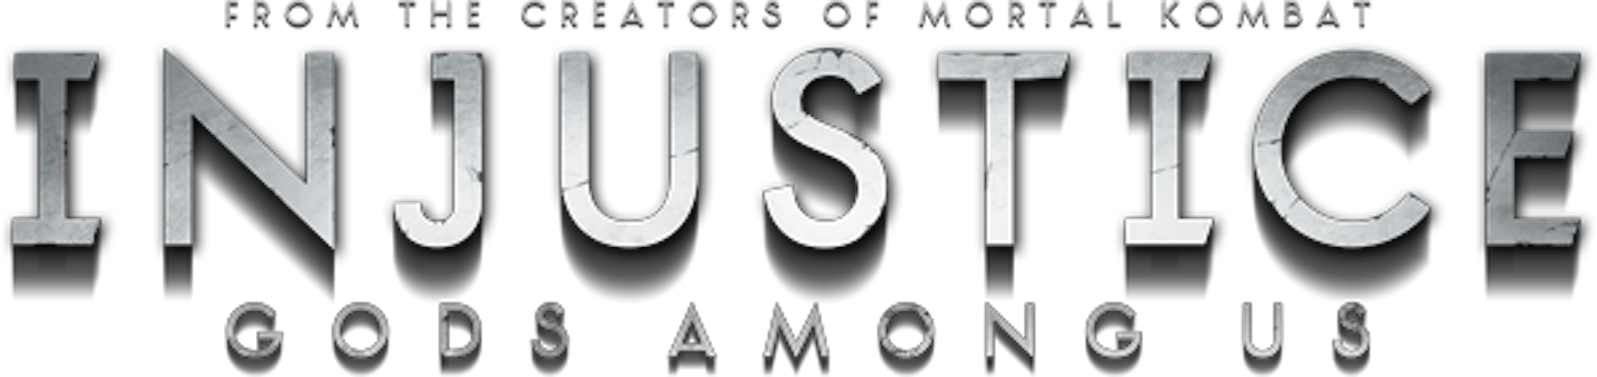 Injustice Logo Transparent Background